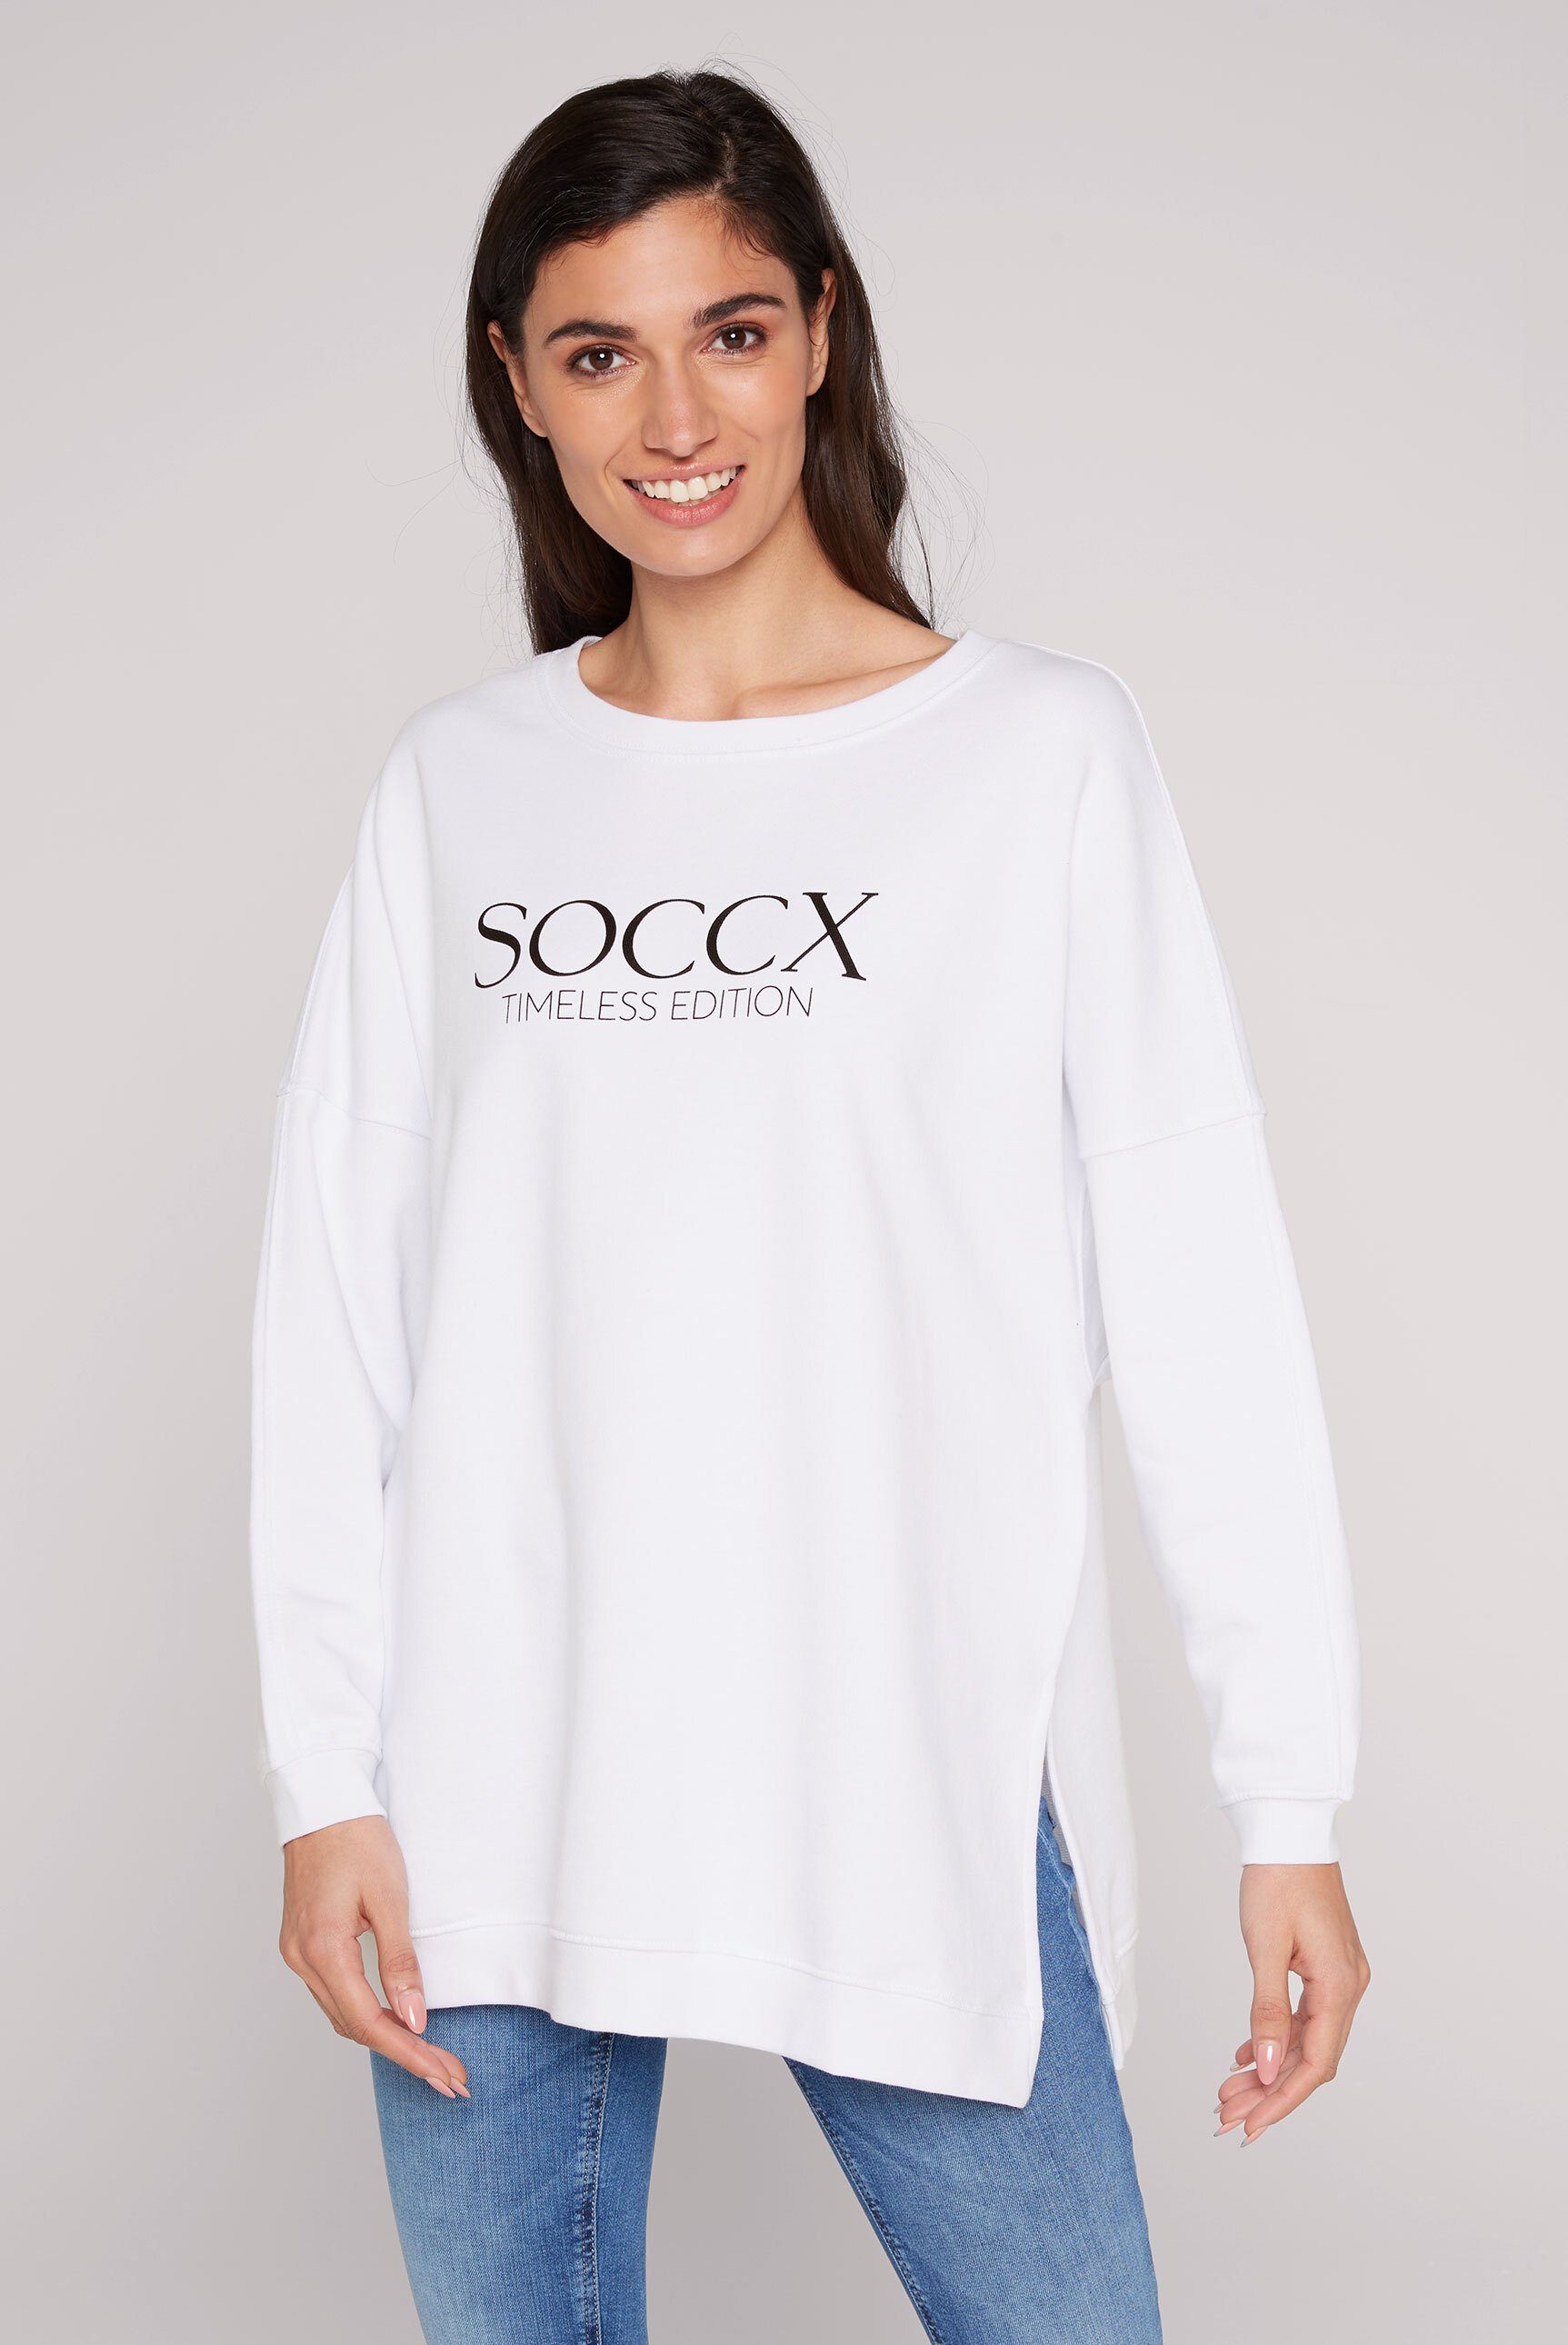 SOCCX Longsweatshirt mit überschnittenen und Rippbündchen Schultern, Ärmeln an Saum